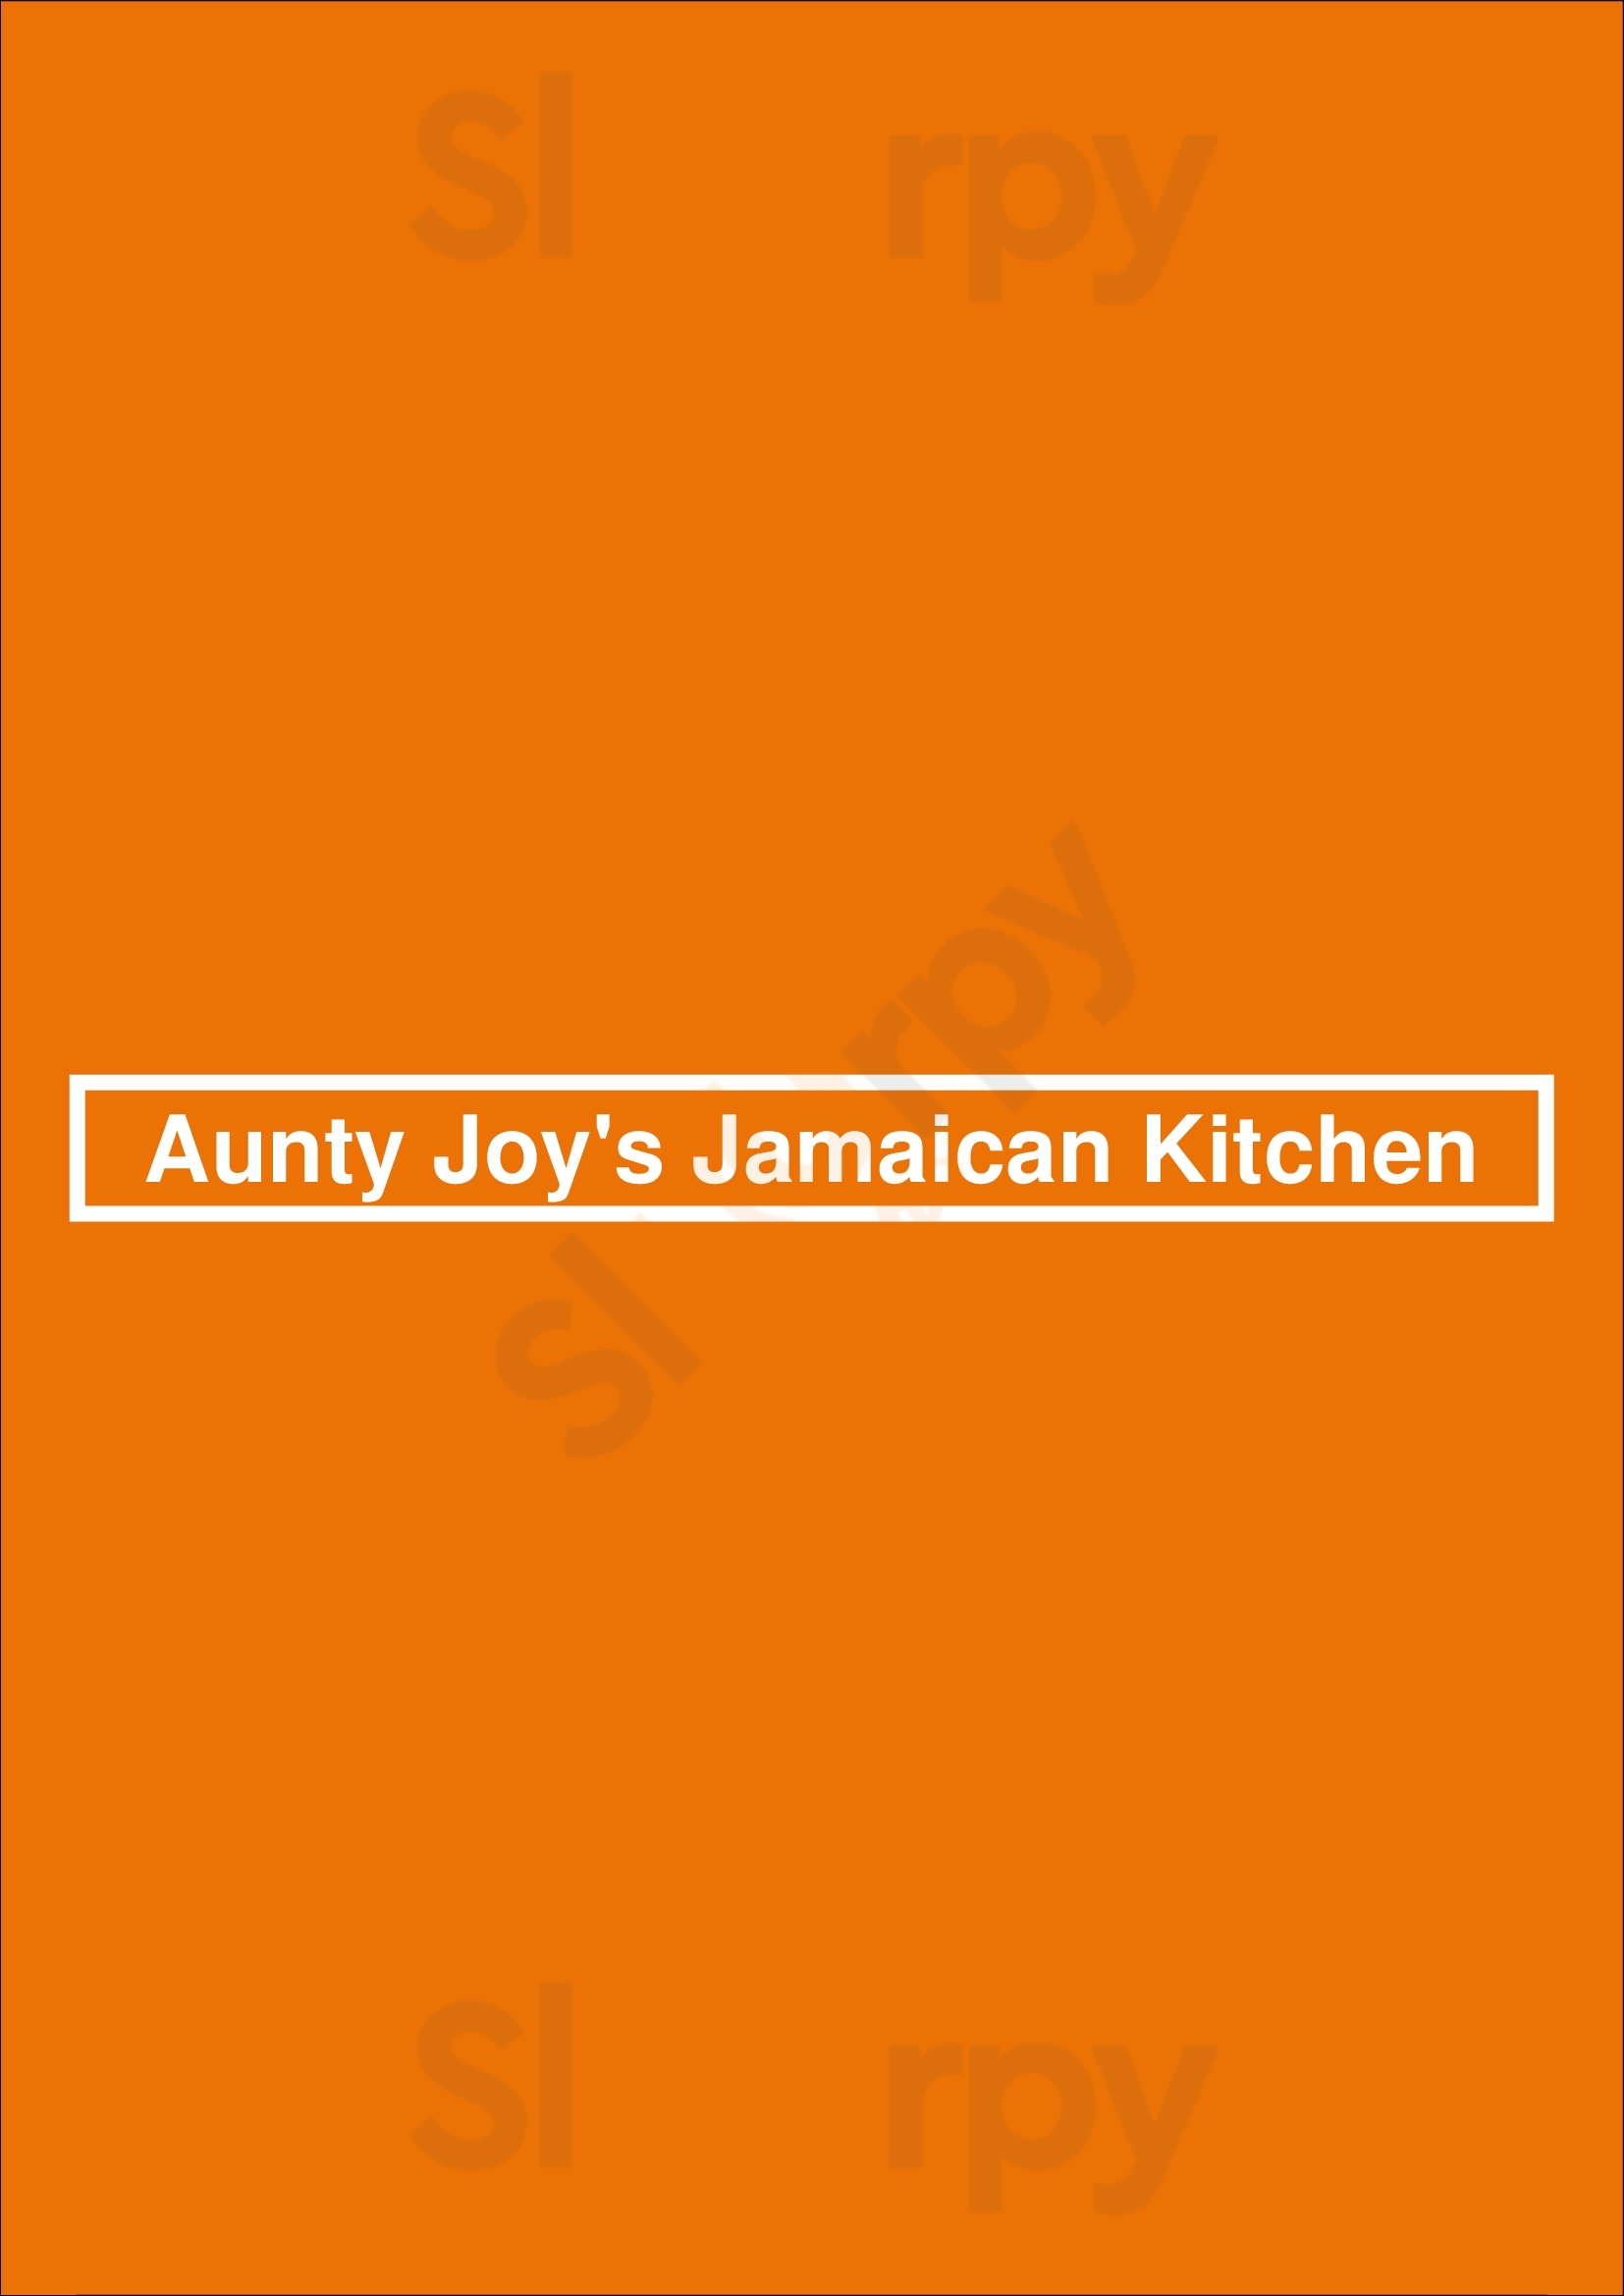 Aunty Joy's Jamaican Kitchen Chicago Menu - 1